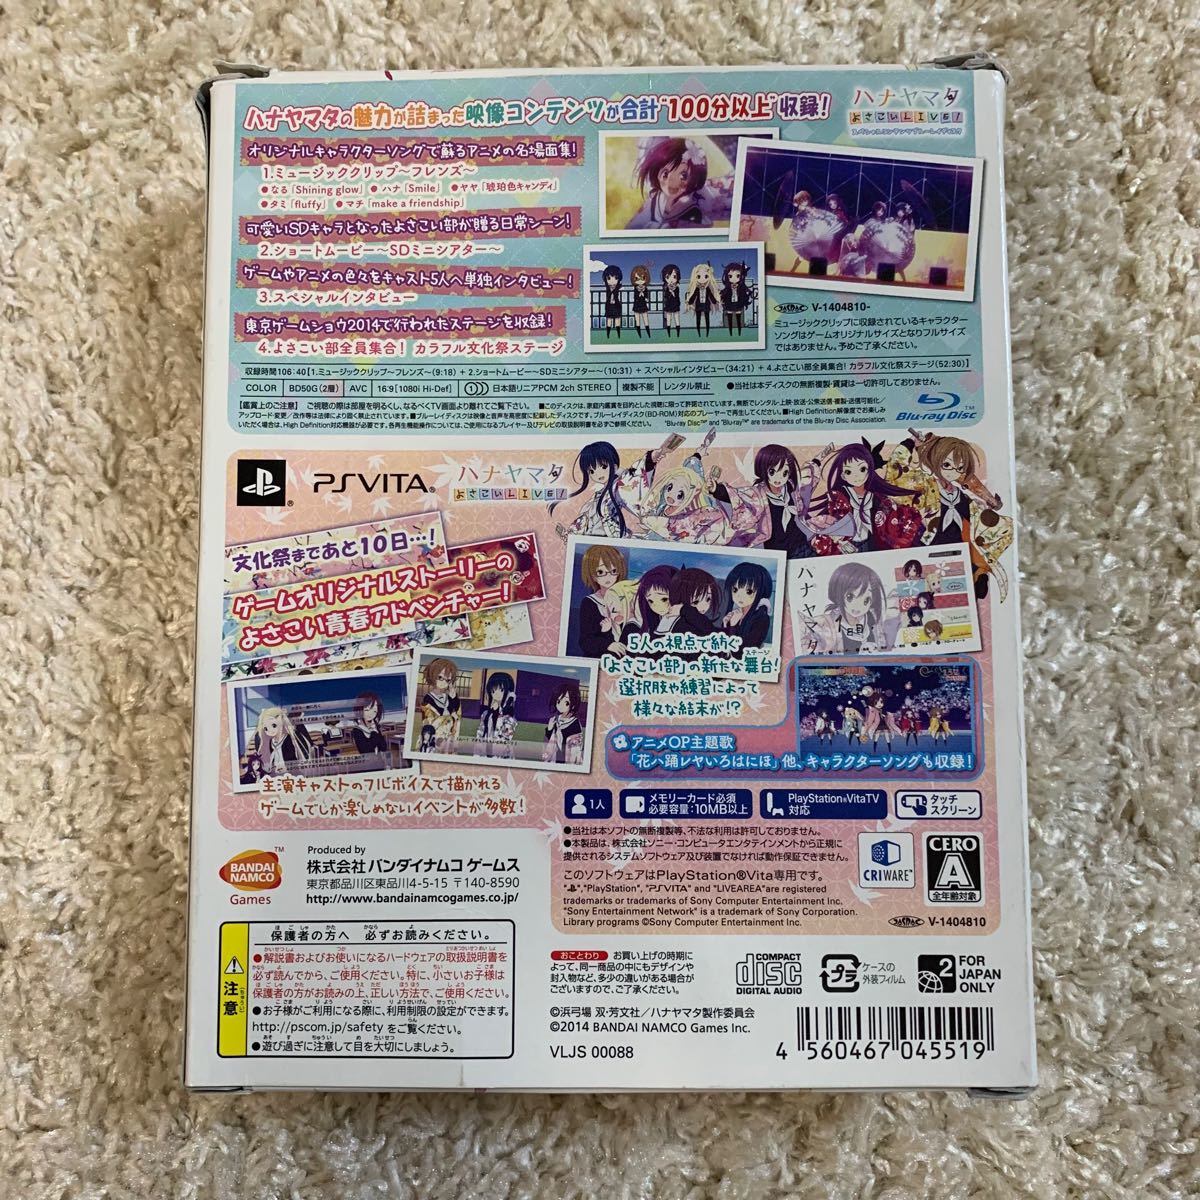 ハナヤマタ よさこいLIVE! カラフル文化祭BOX! 限定版 PS Vita